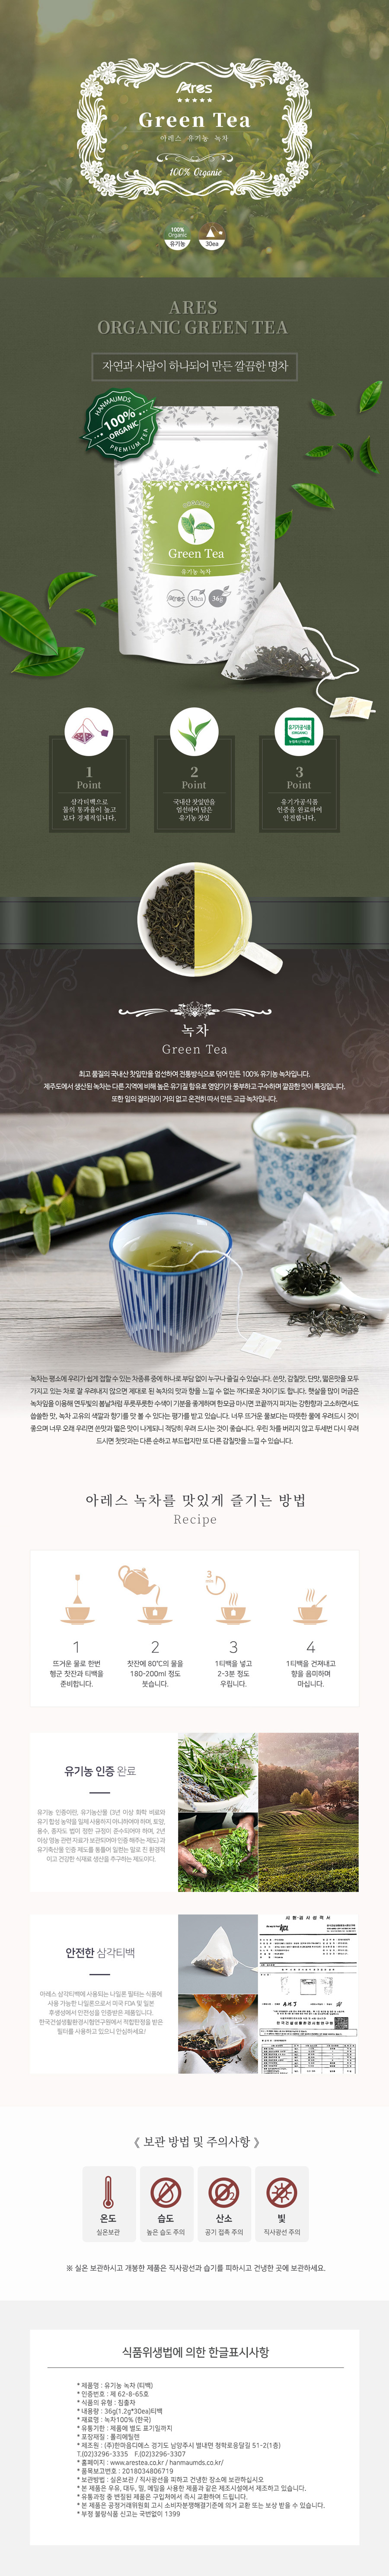 Tea_GreenTea